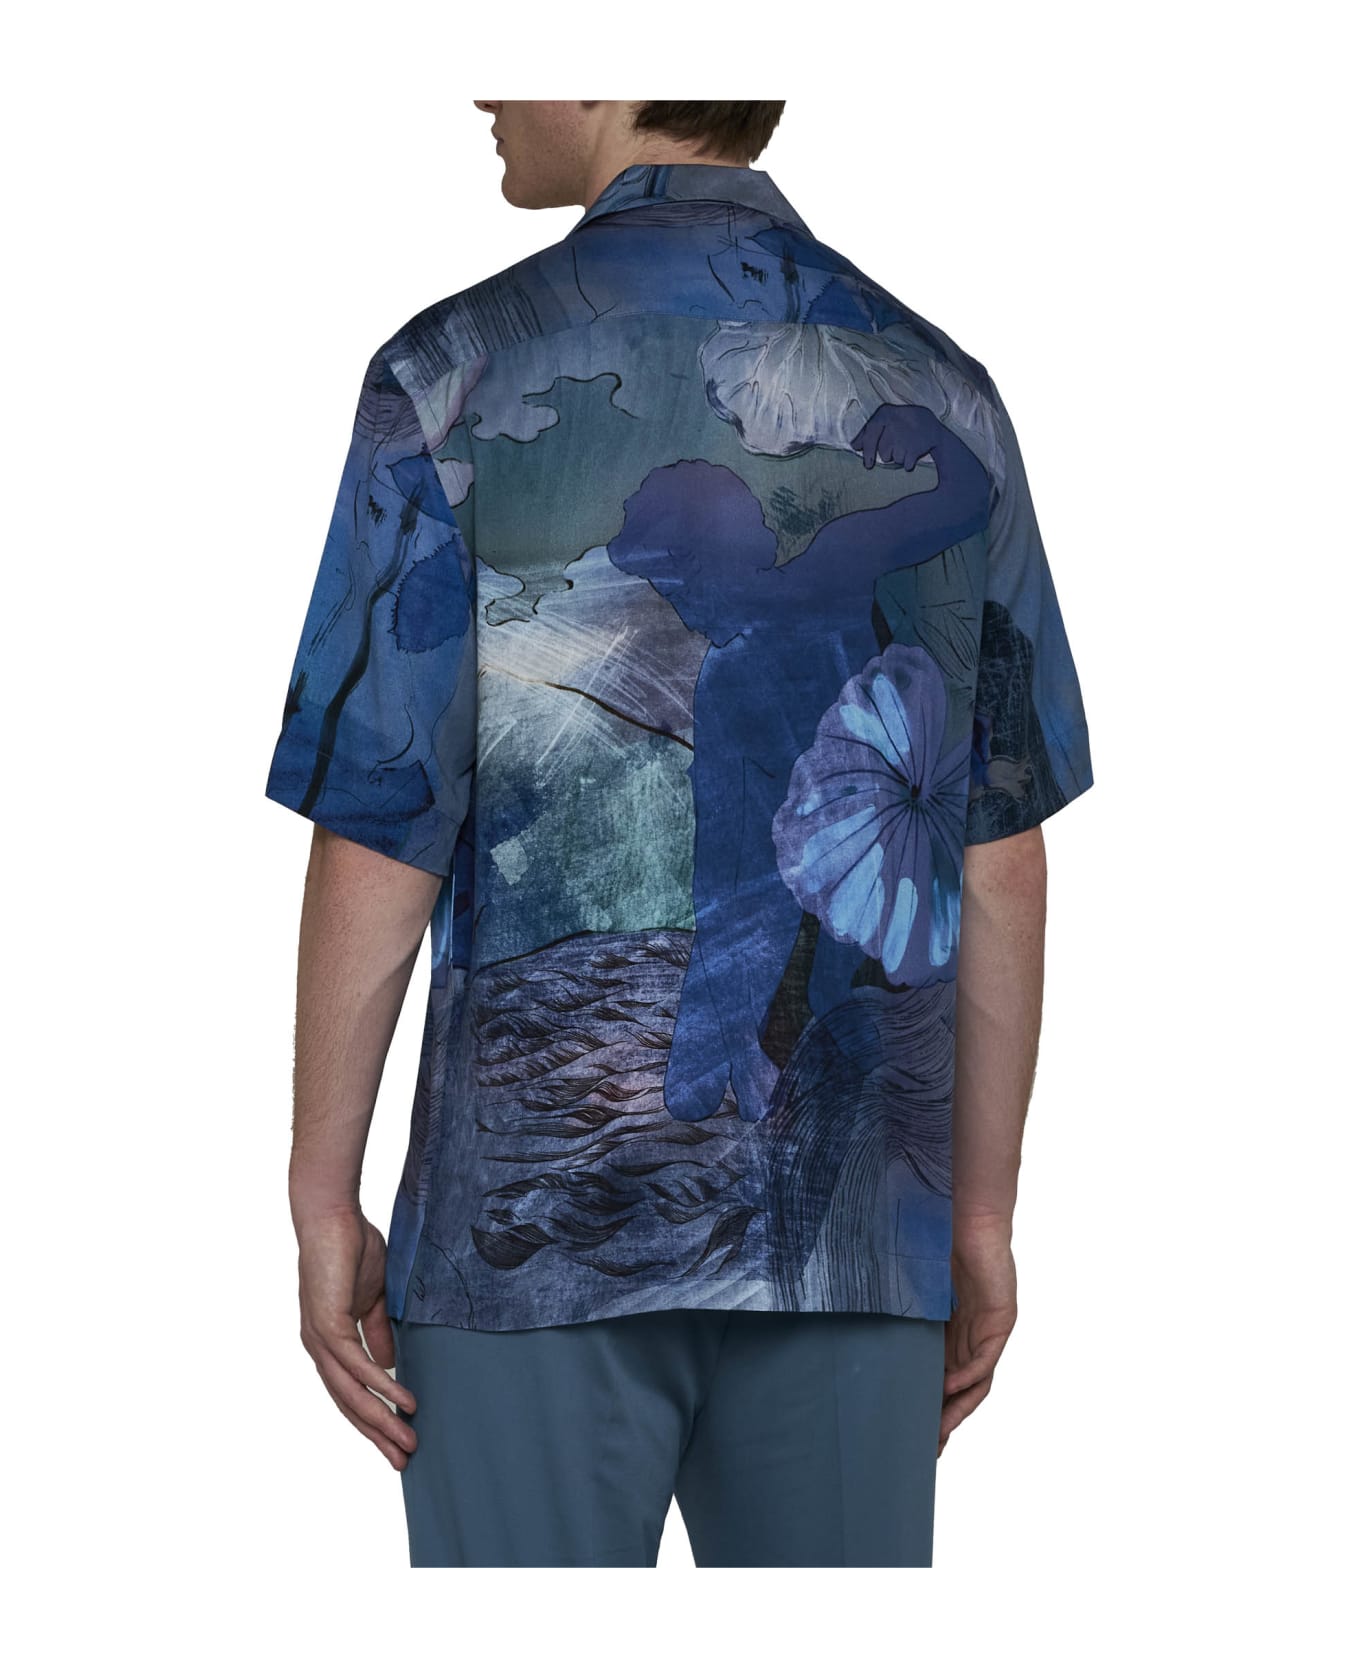 Paul Smith Shirt - Blue